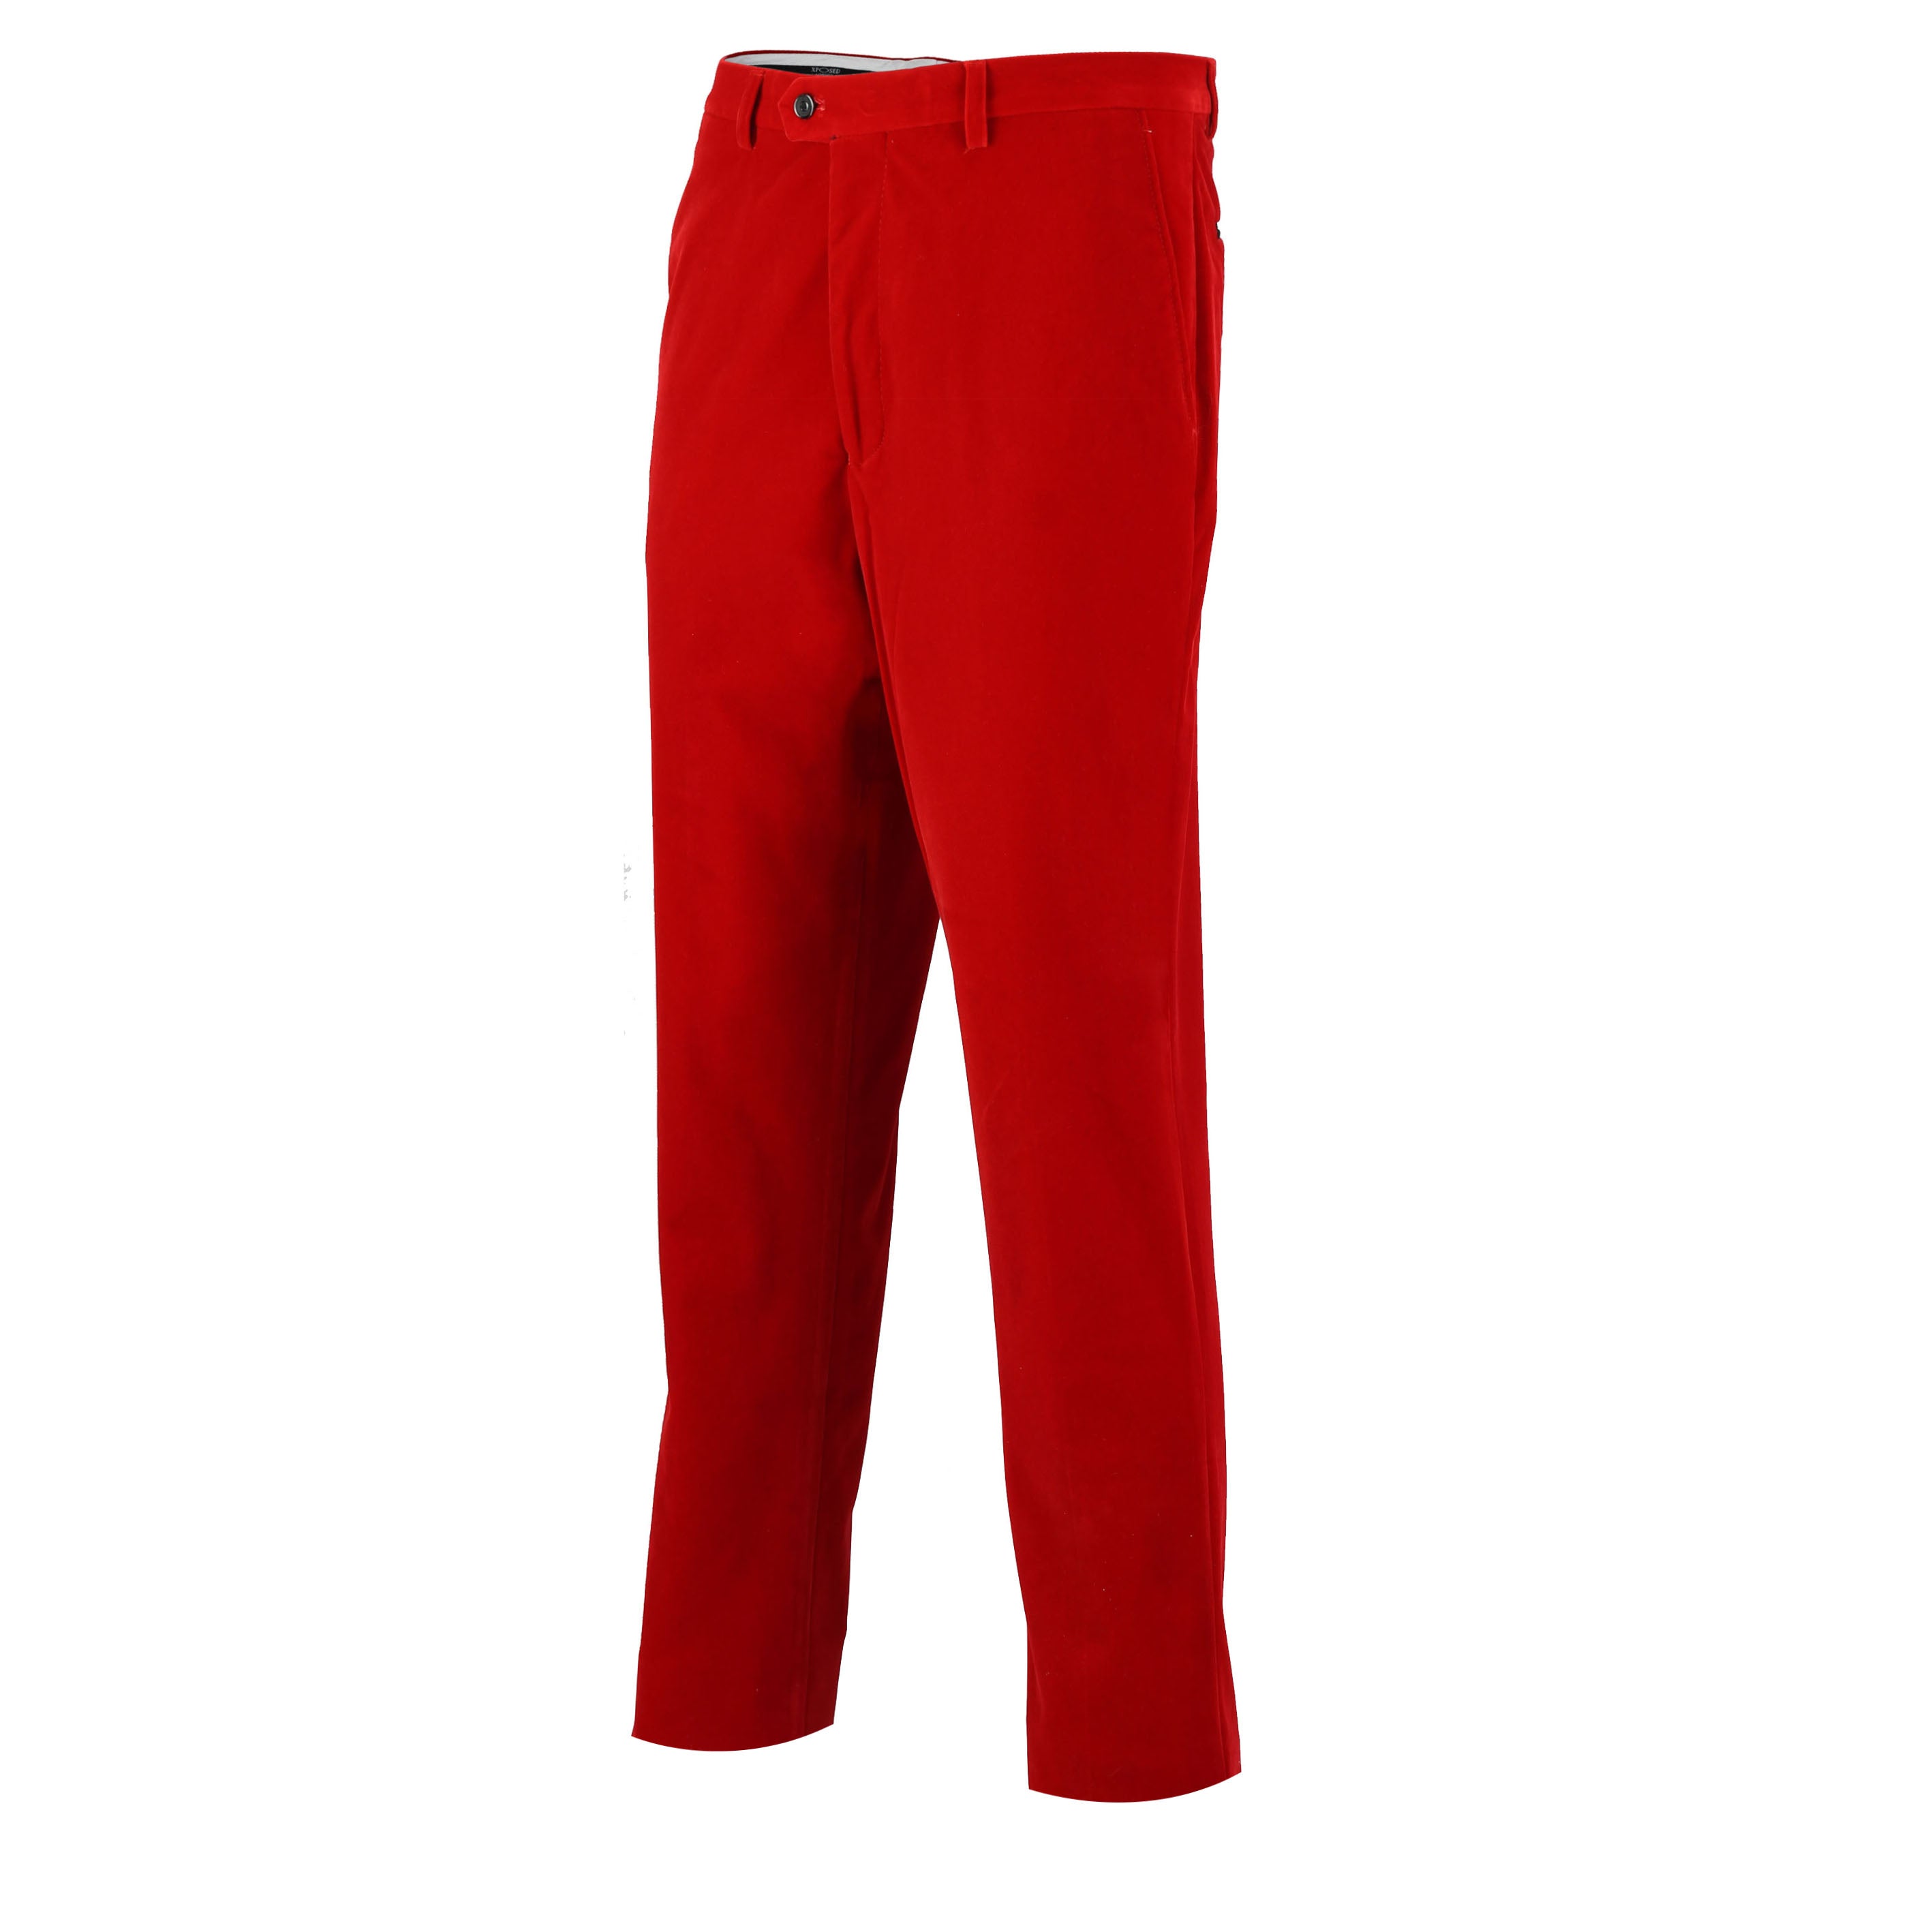 Mens Red Slim Fit Soft Velvet Formal Dress Suit Pants